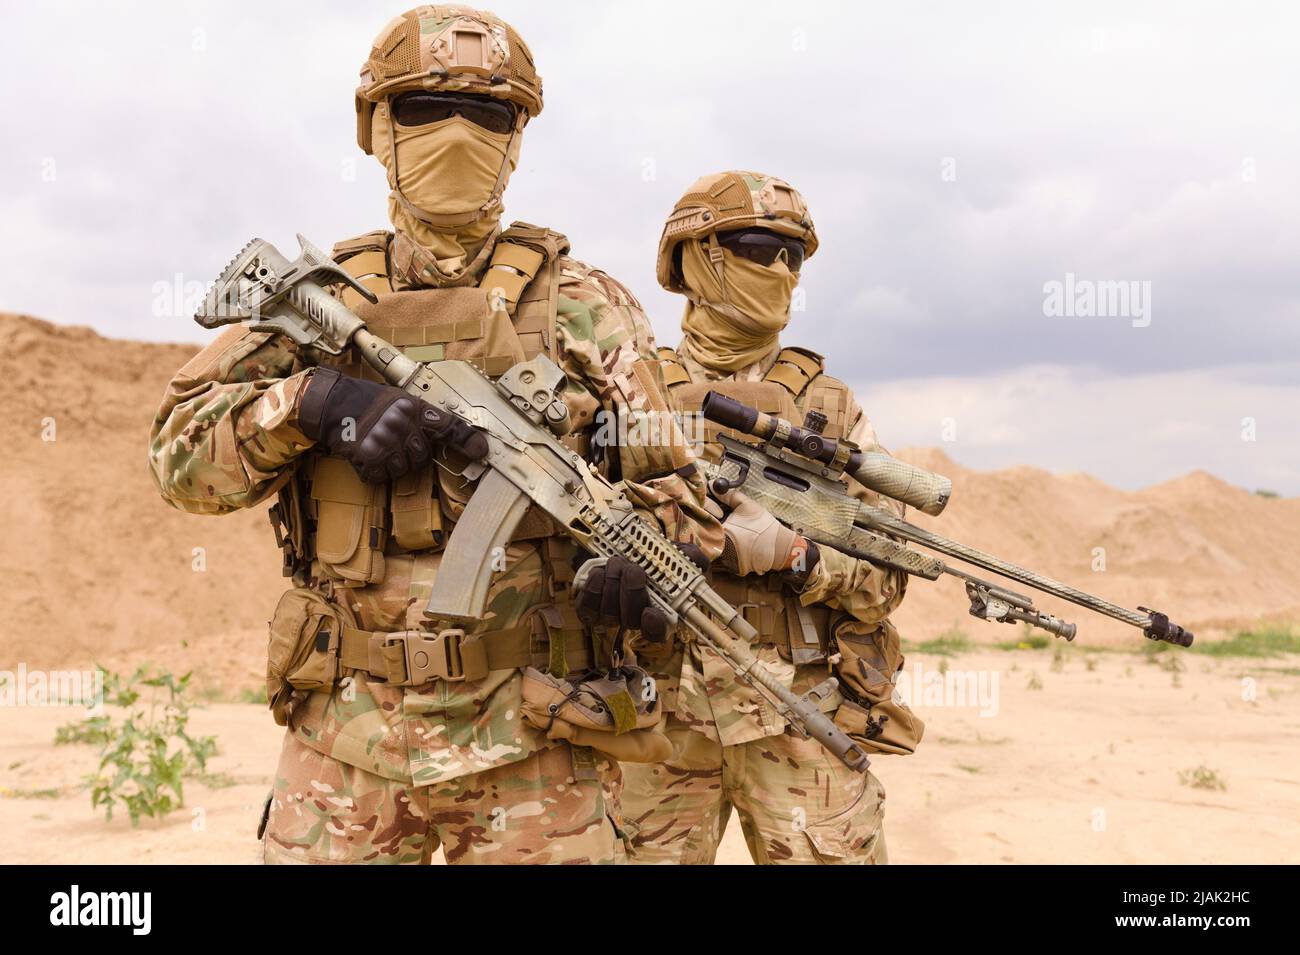 Deux soldats des forces spéciales armées et équipés dans le désert. Banque D'Images